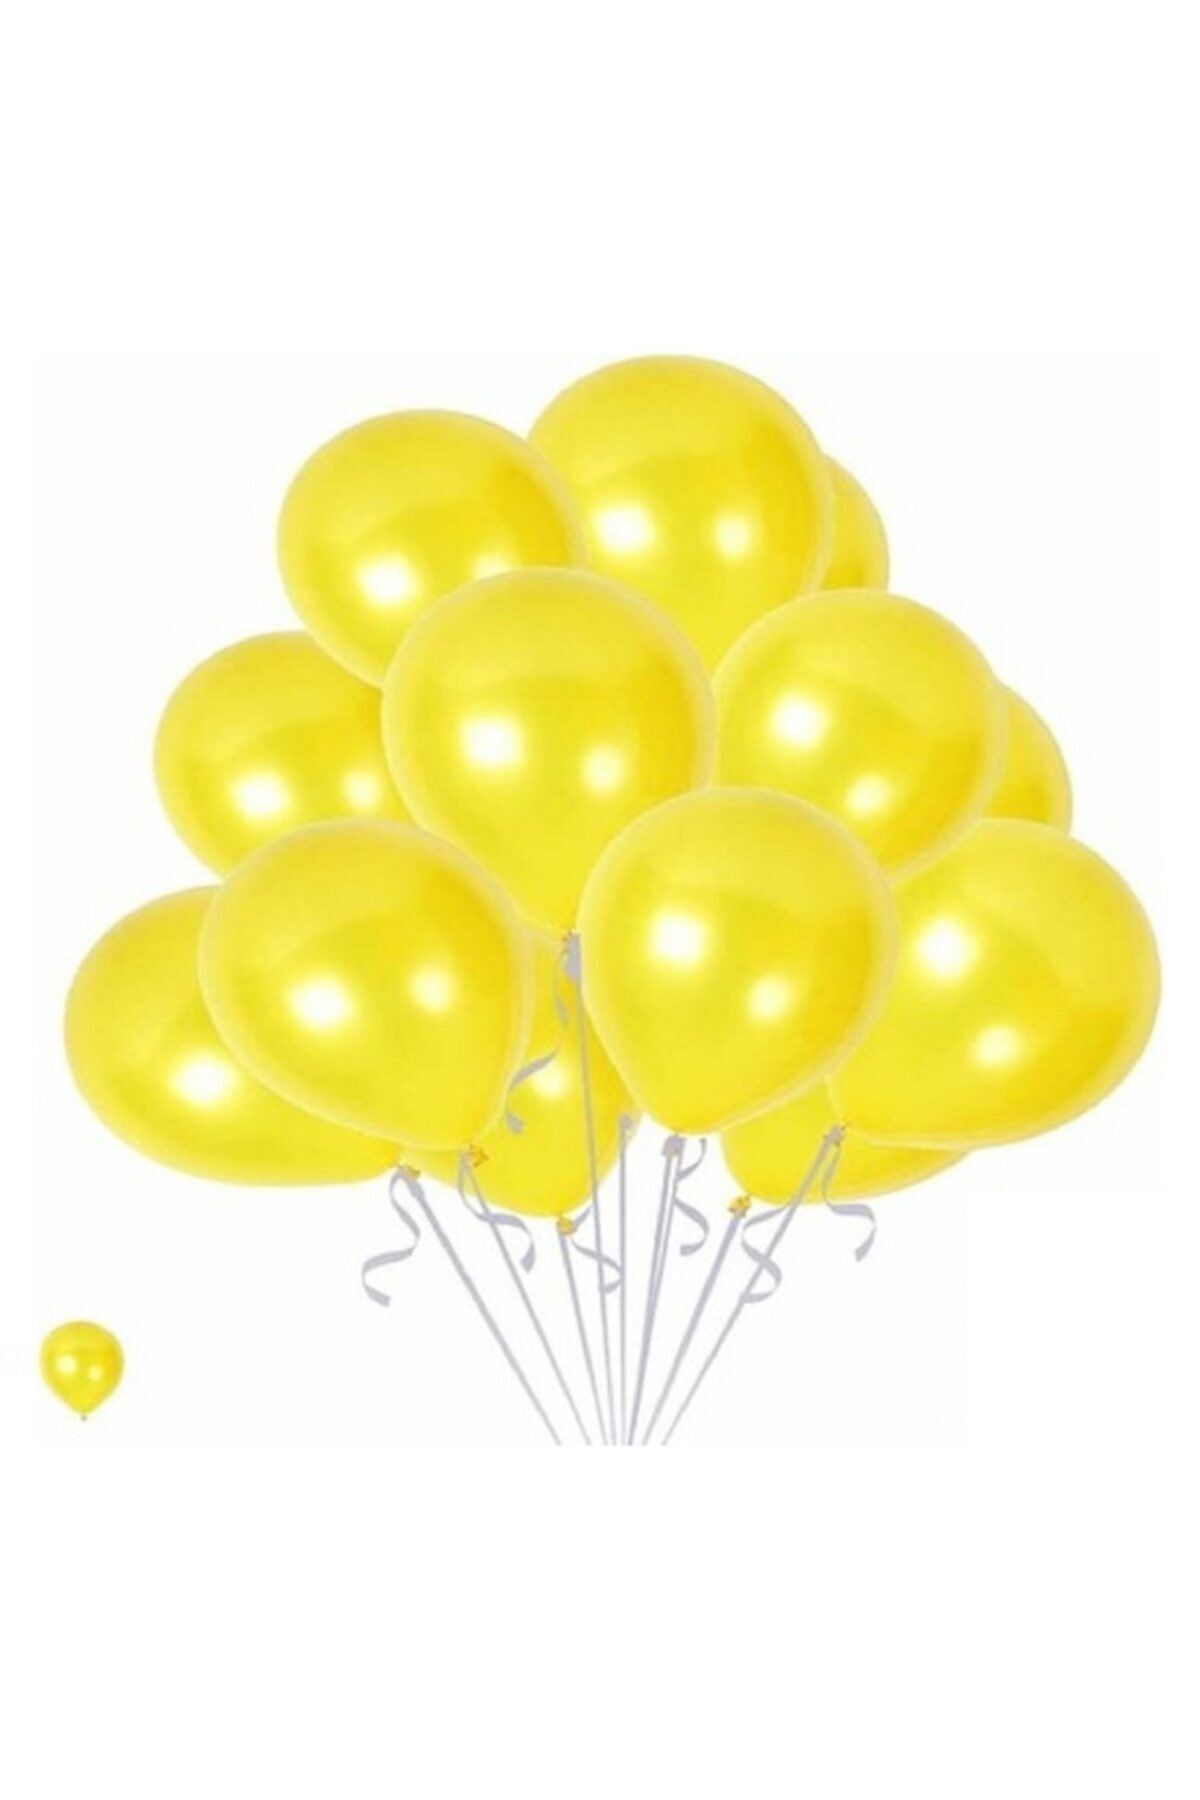 HKNYS 40 Adet Metalik Sedefli Sarı Balon, Helyumla Uçan-dogum Günü-parti-kaliteli Balon